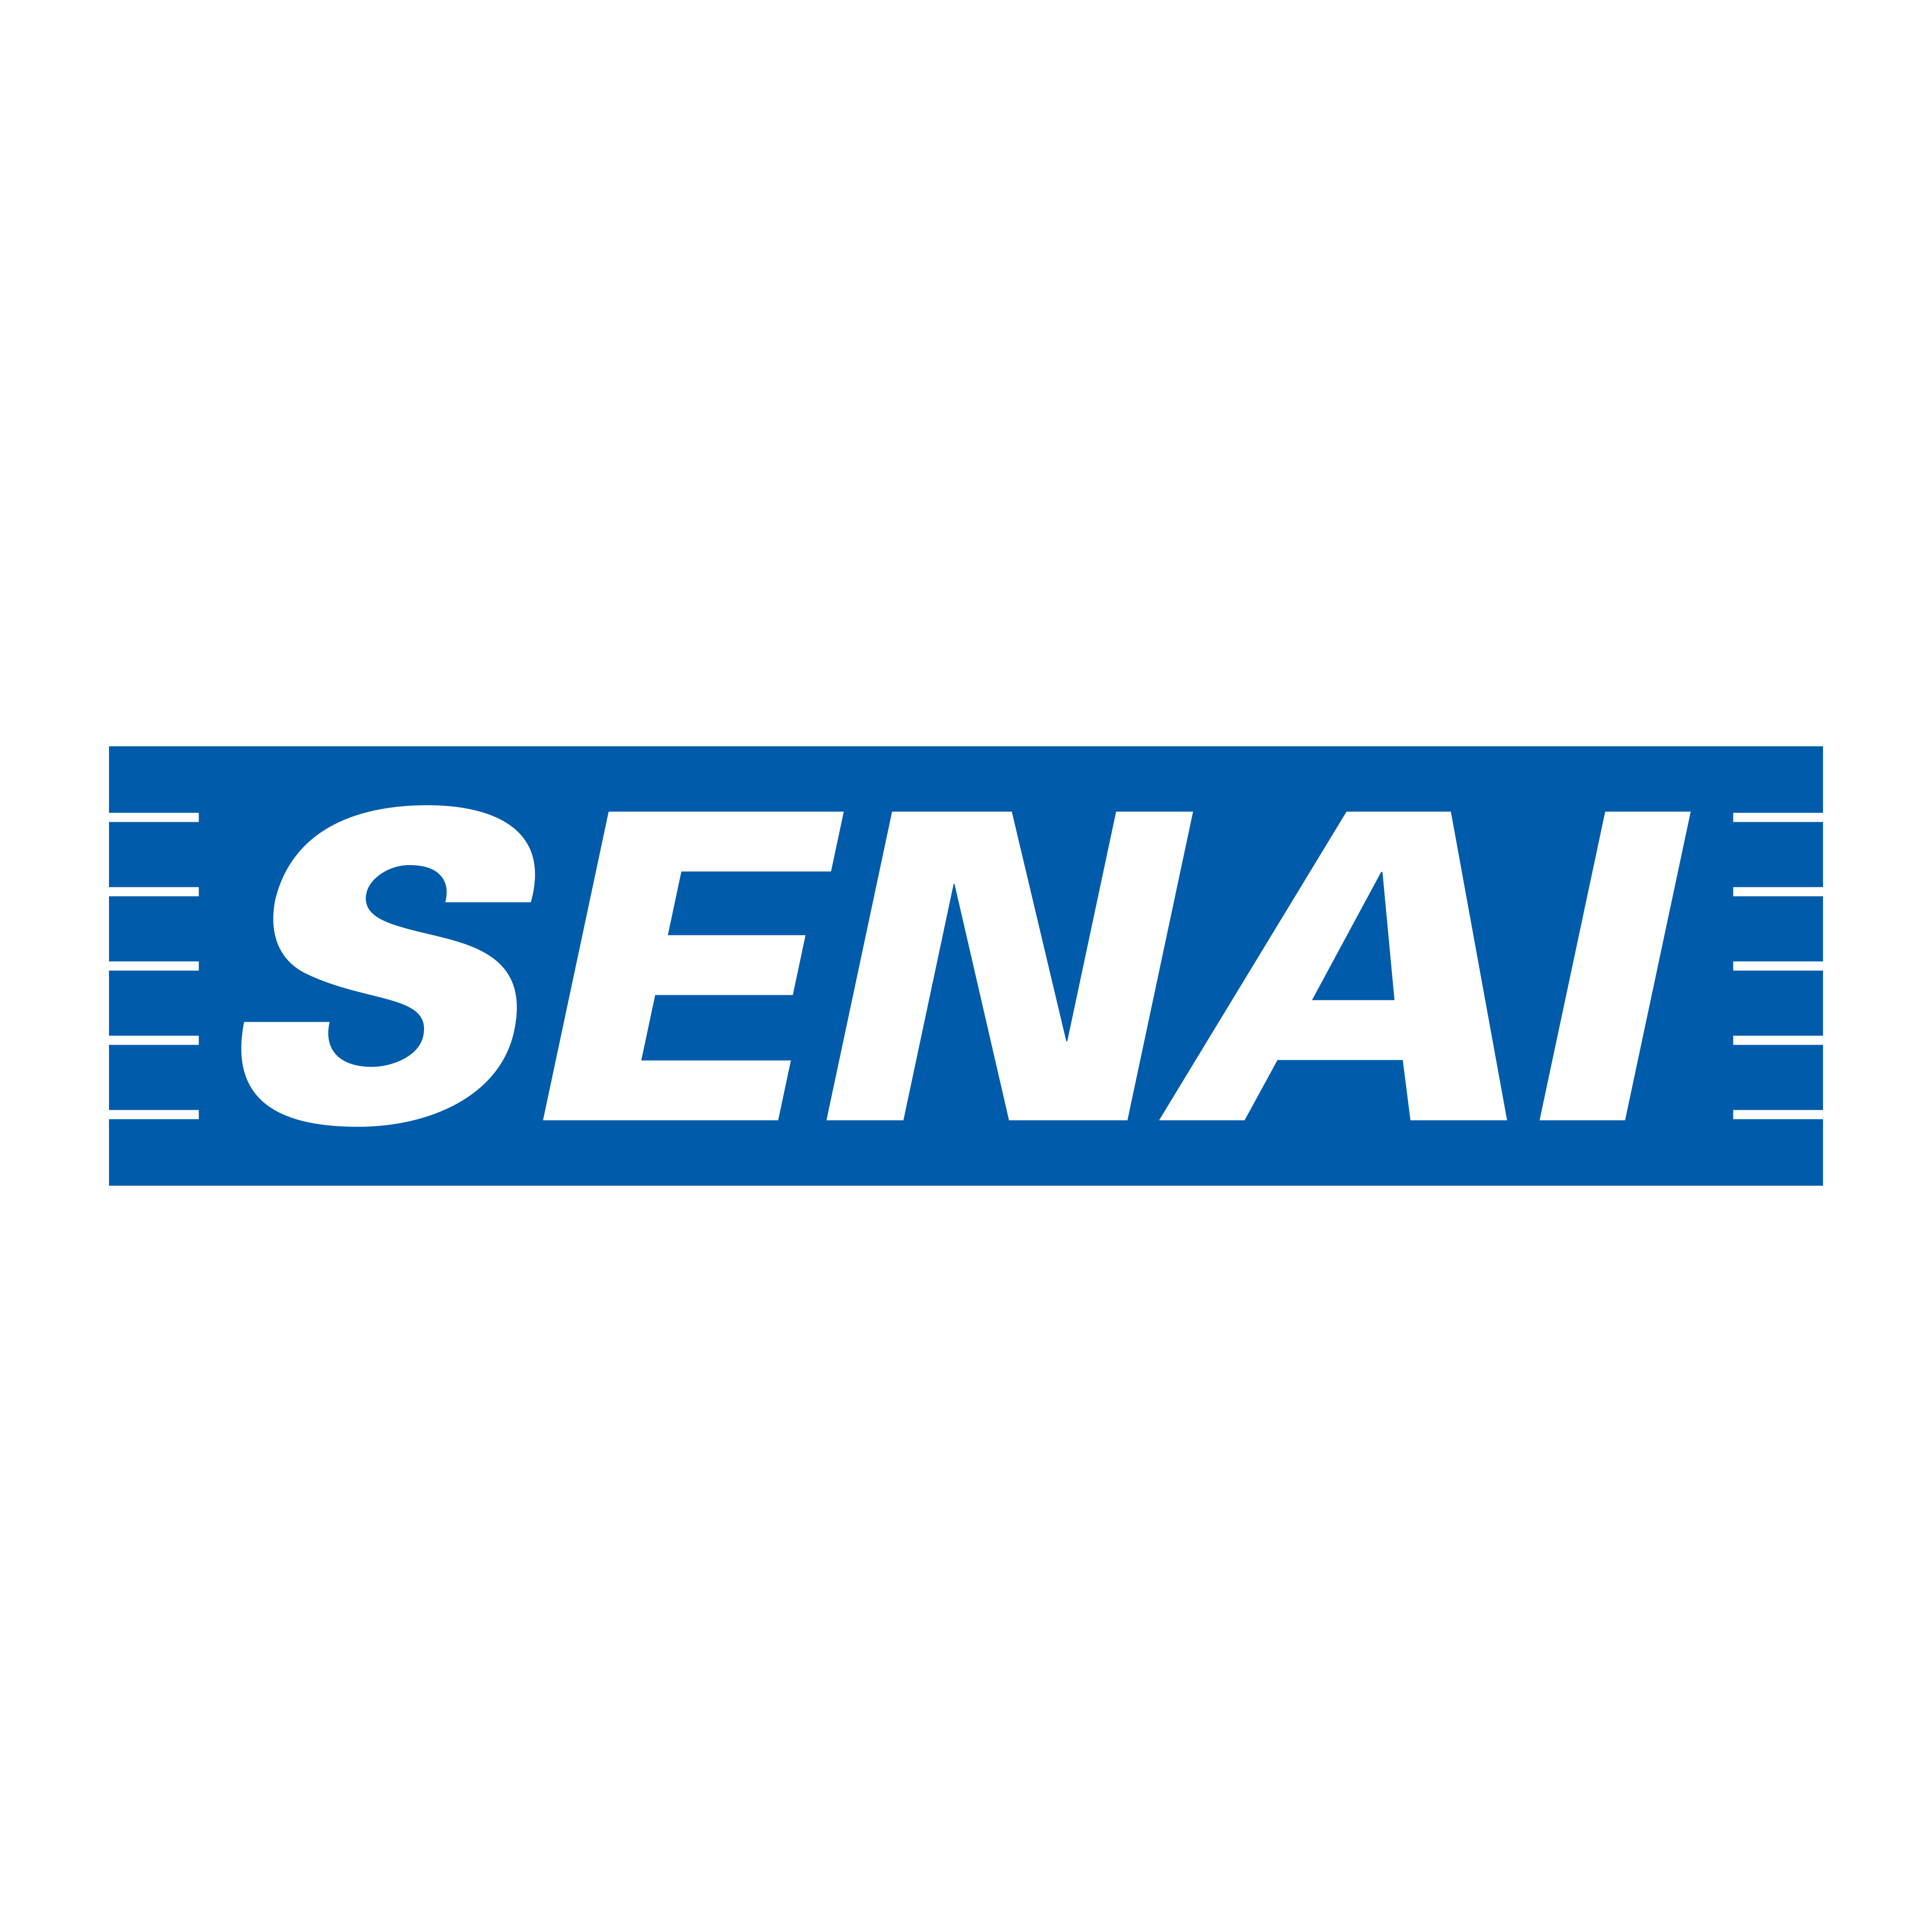 SENAI Logo PNG.